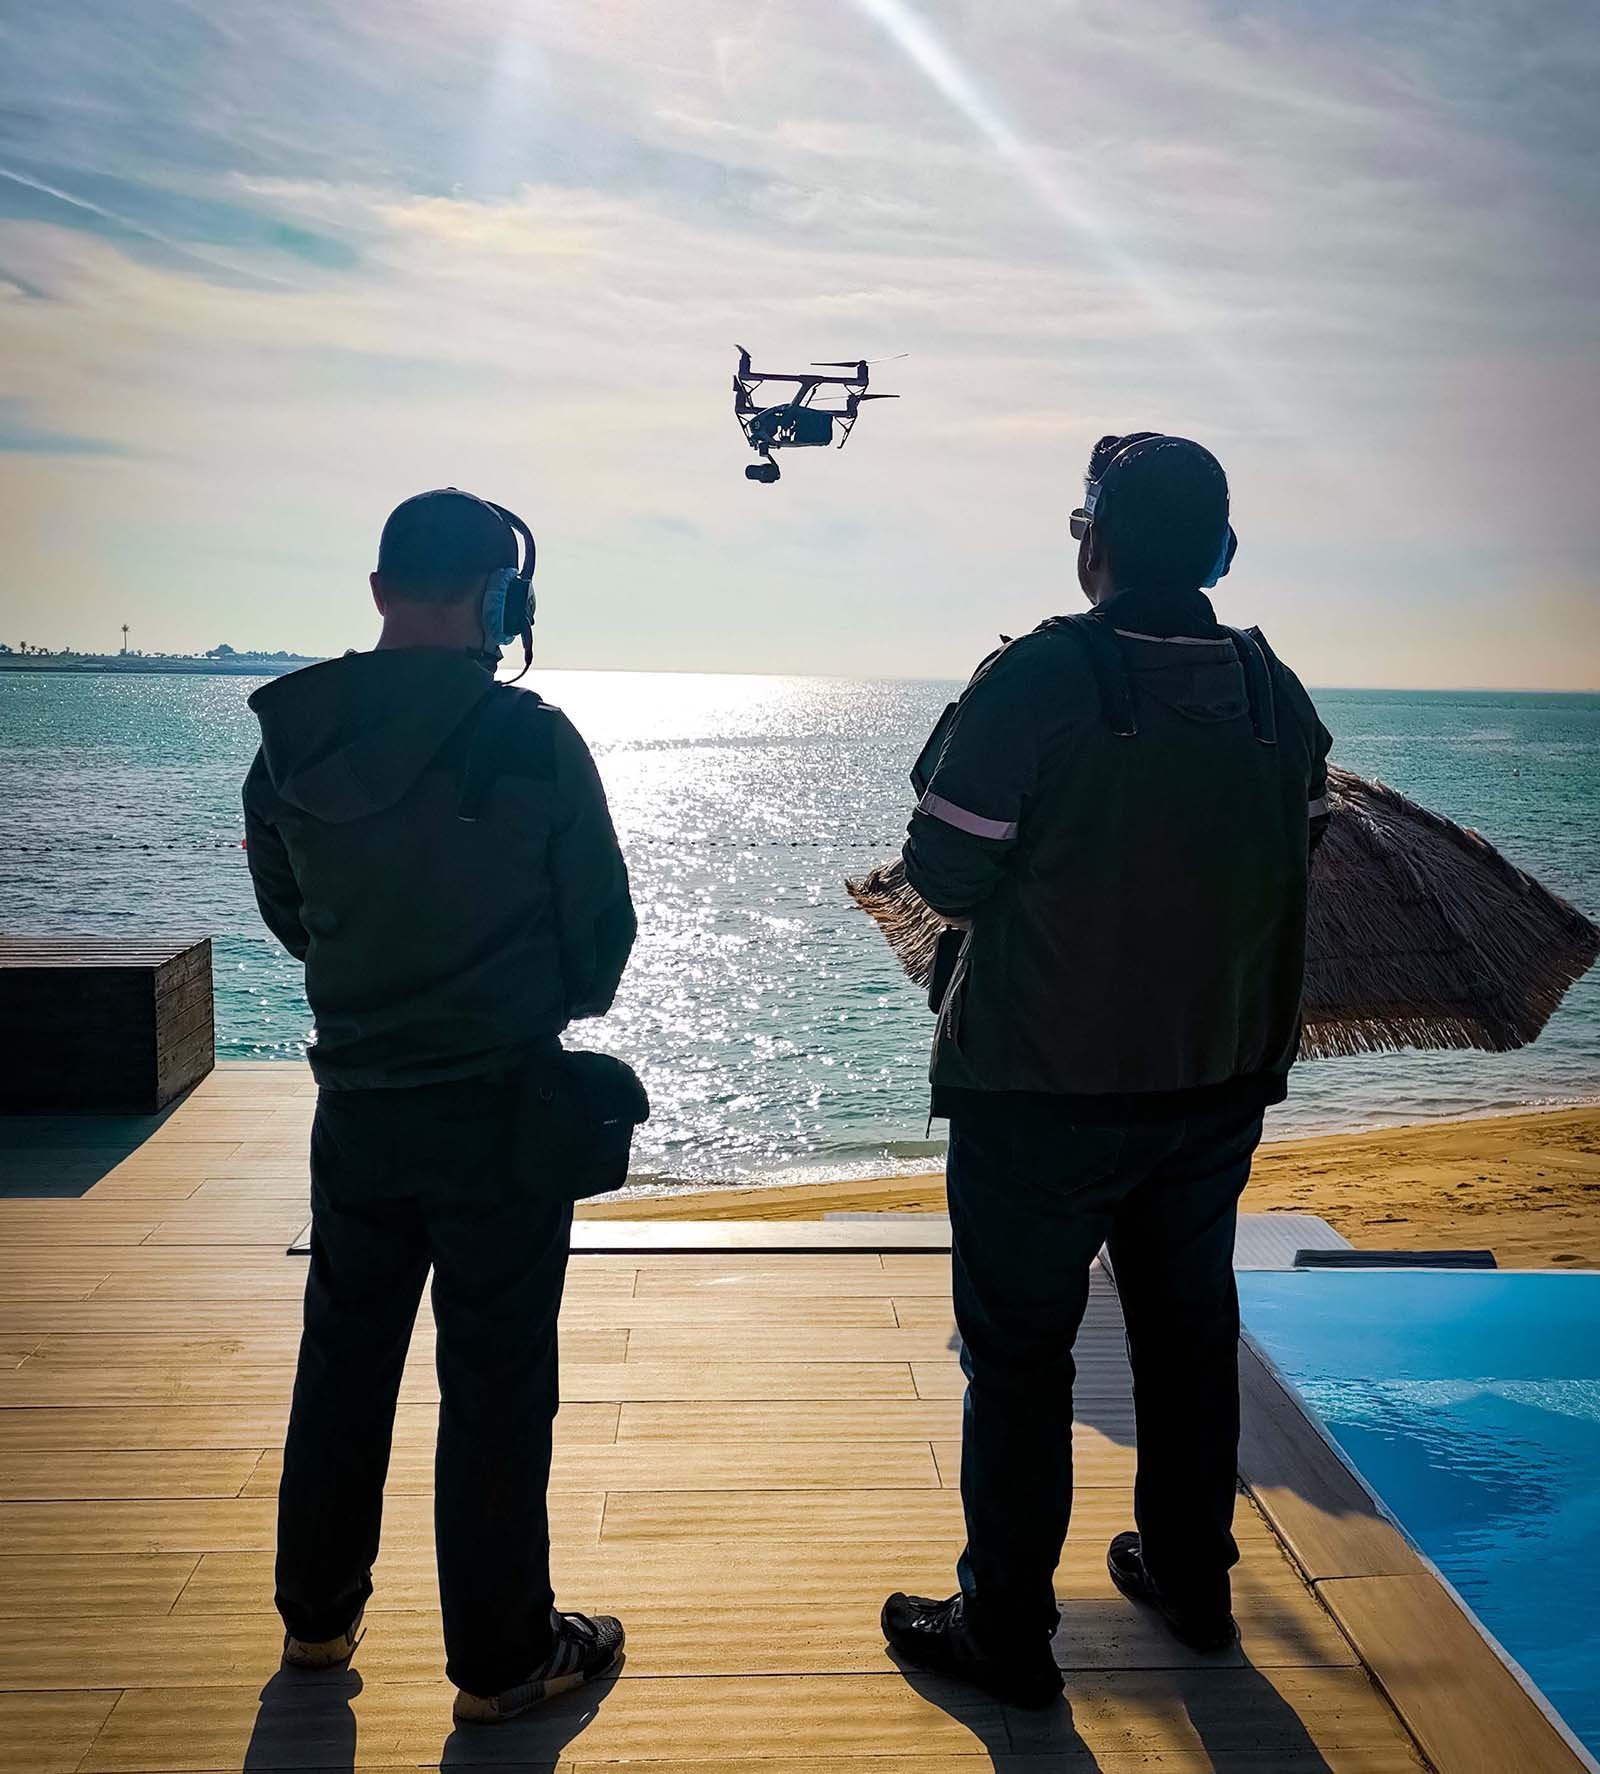 Dos operadores de drones con paneles de control supervisan un rodaje en el desierto, coordinando las operaciones de filmación aérea.